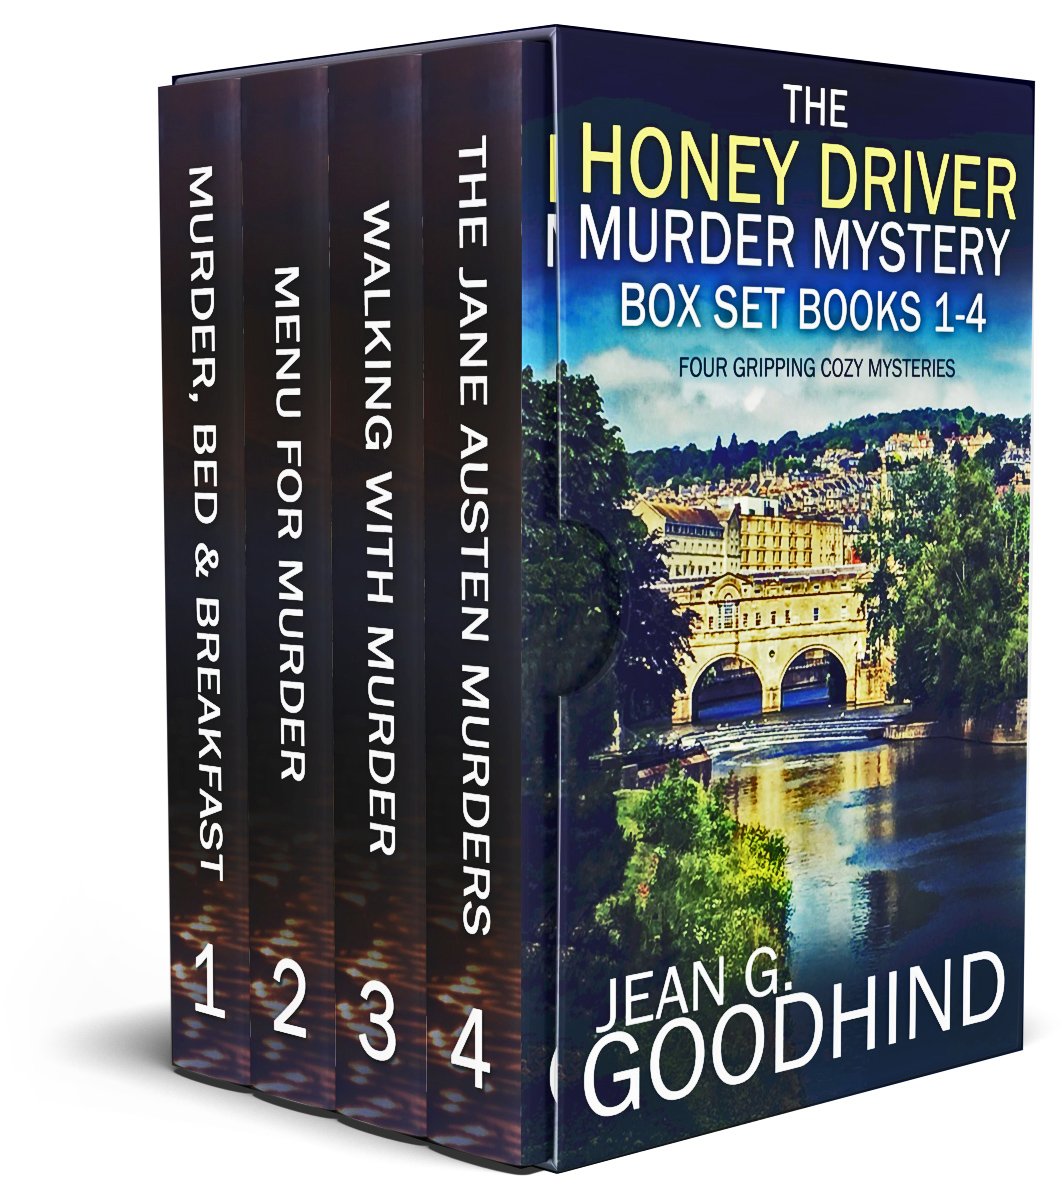 HONEY DRIVER MURDER MYSTERIES 1-4 publish cover.jpg